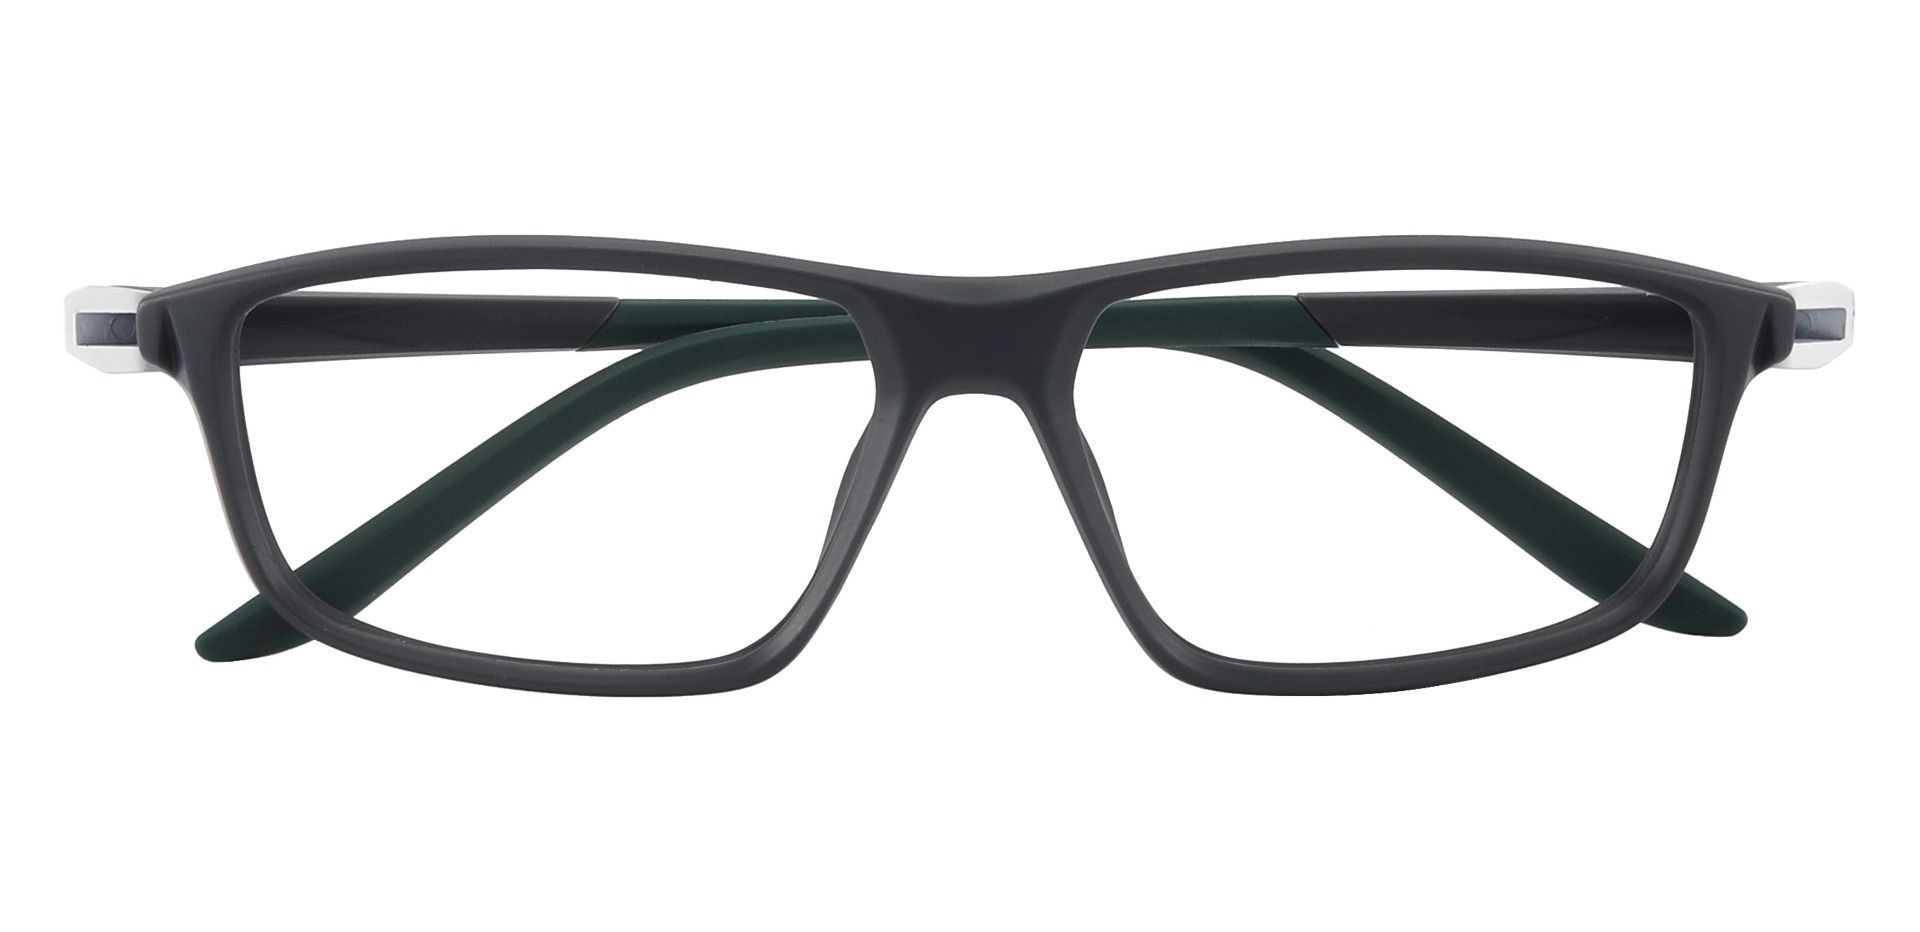 Mark Rectangle Prescription Glasses - Gray